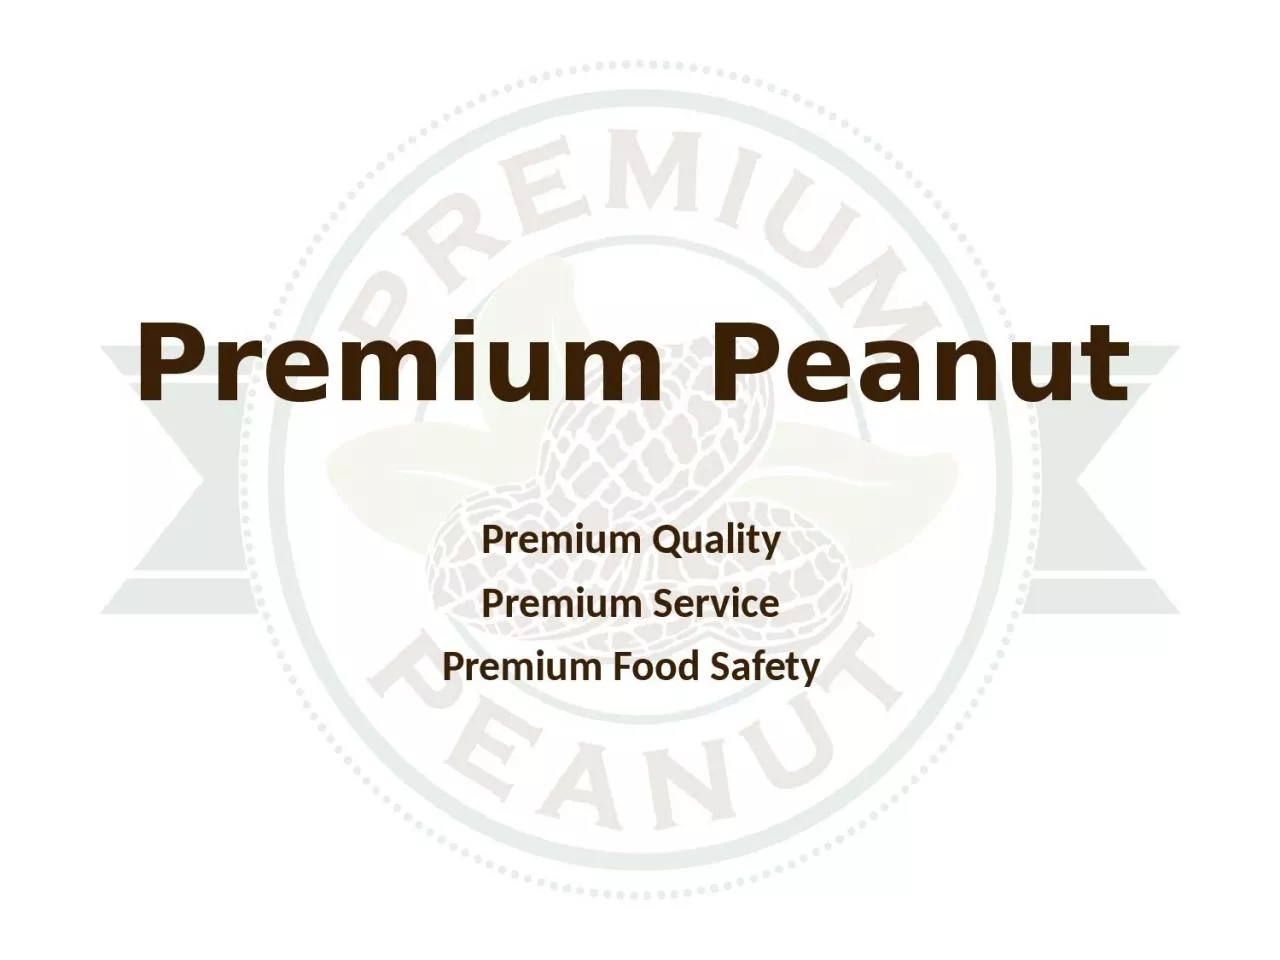 Premium Peanut Premium Quality